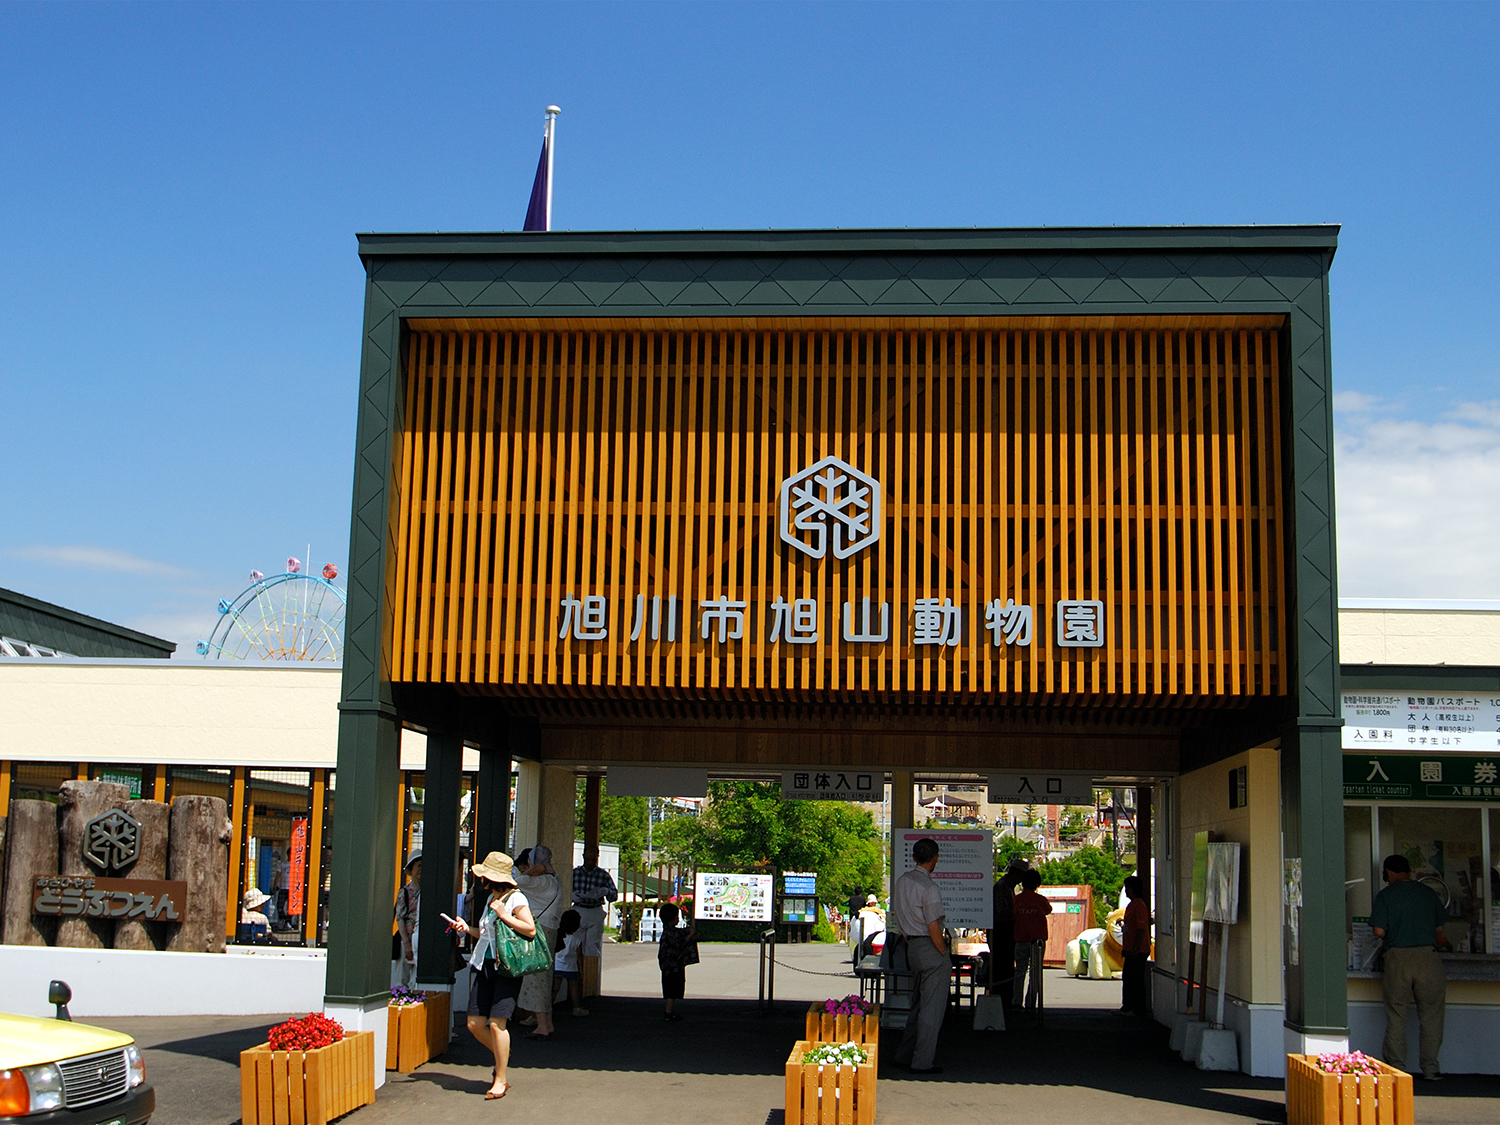 【夏】旭川・富良野・札幌を列車で巡る2泊3日